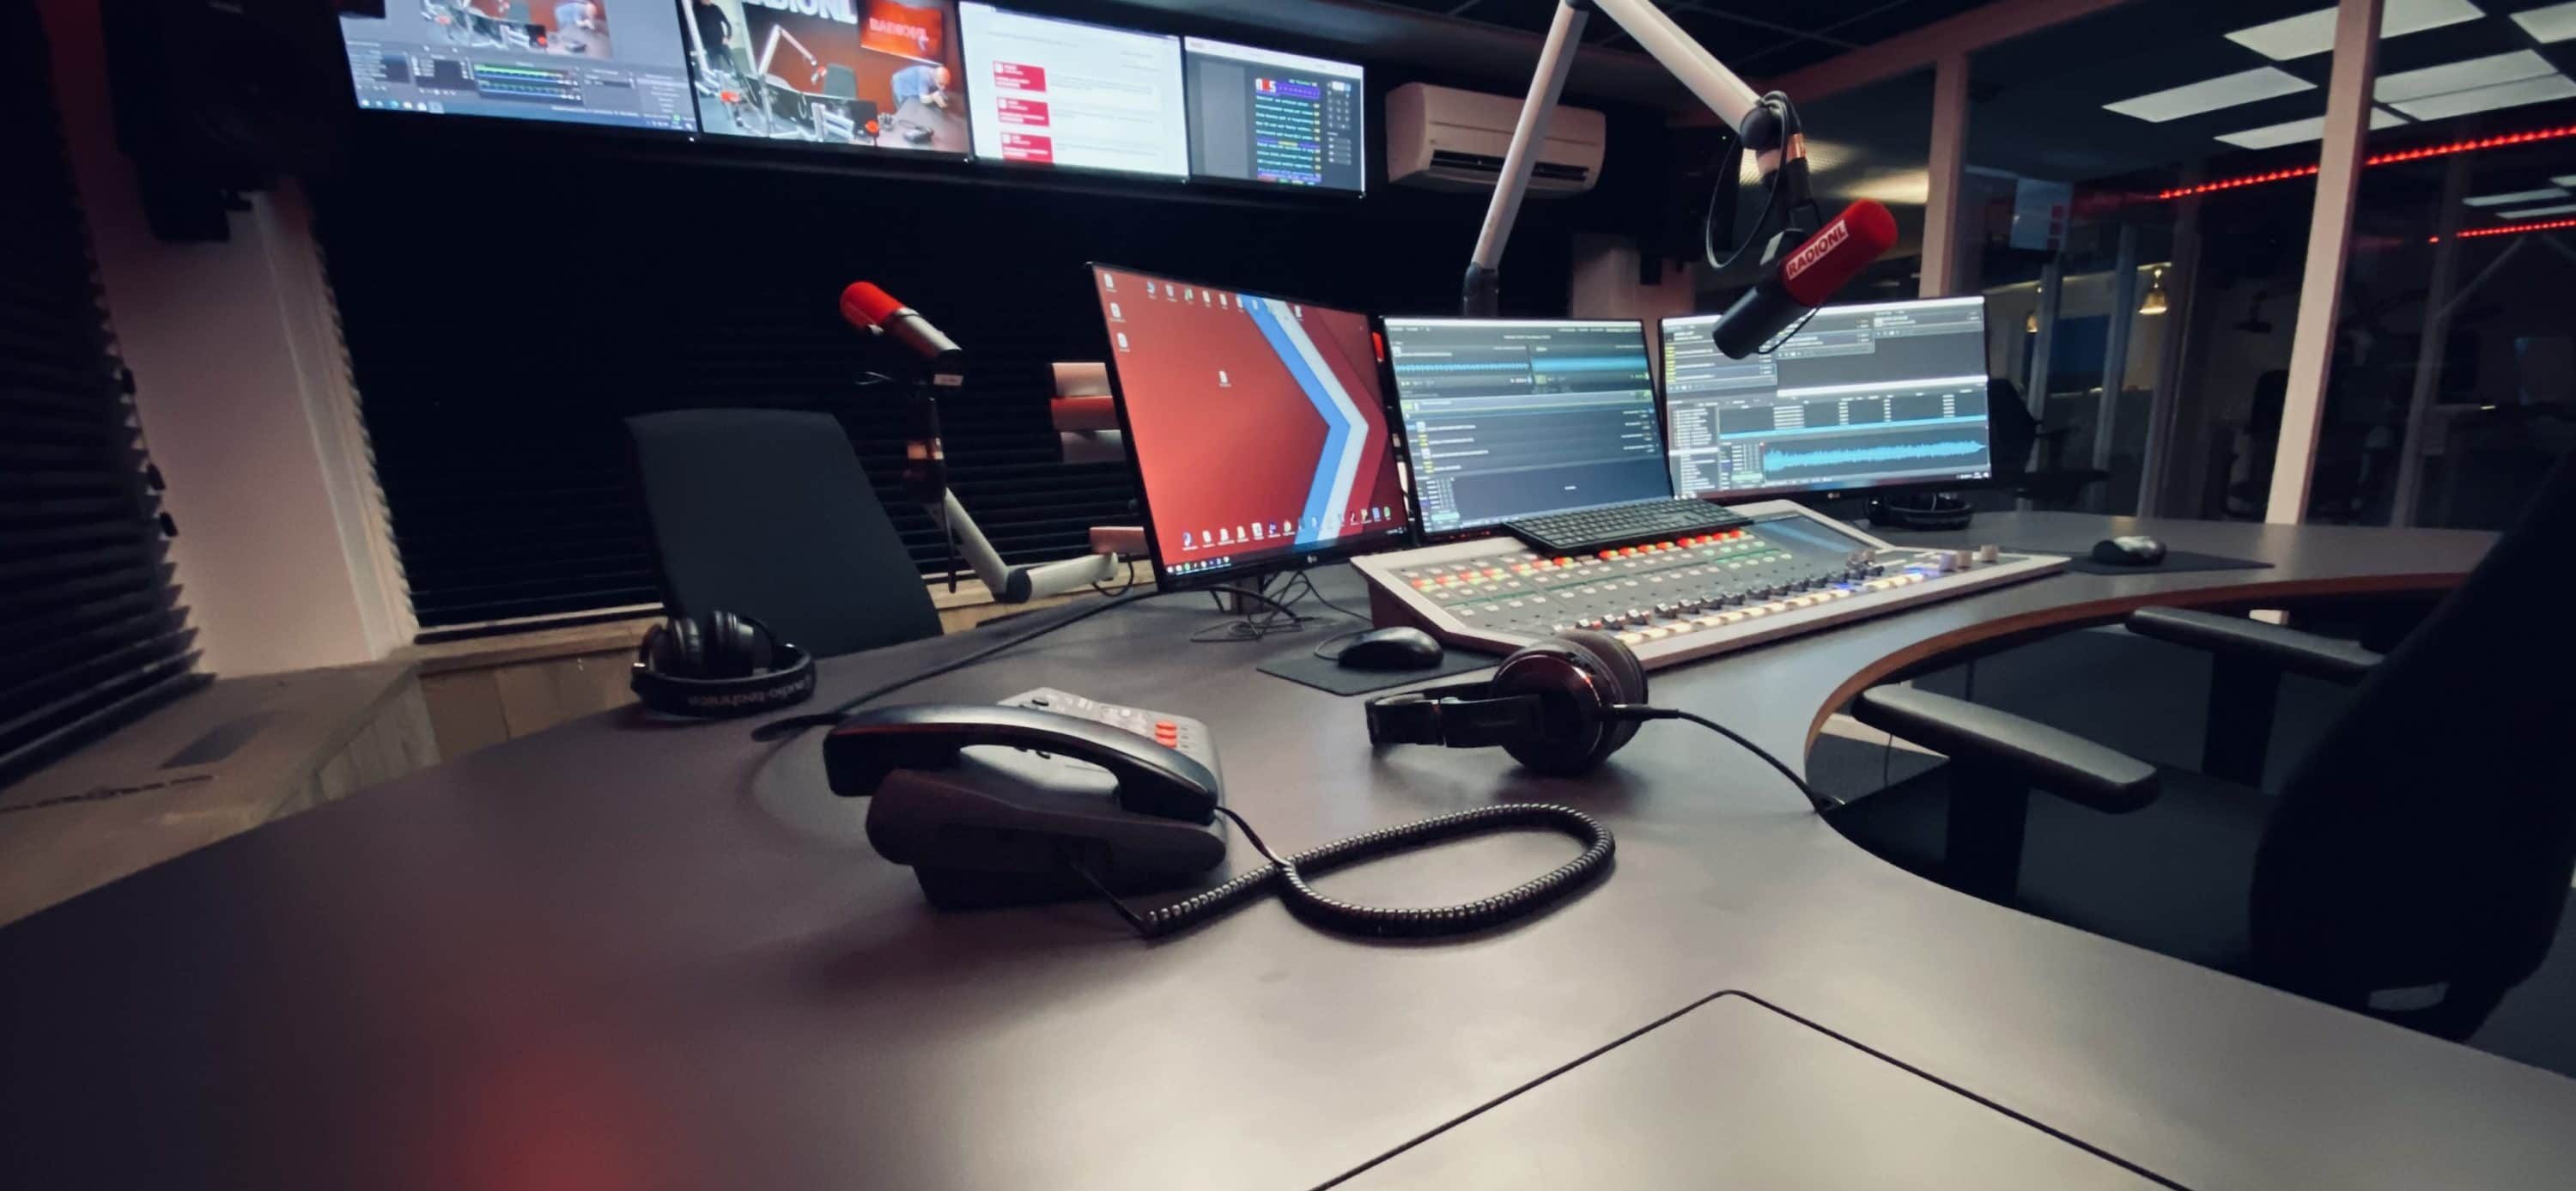 Min vochtigheid vereist RADIONL neemt nieuwe studio in gebruik - RadioFreak.nl